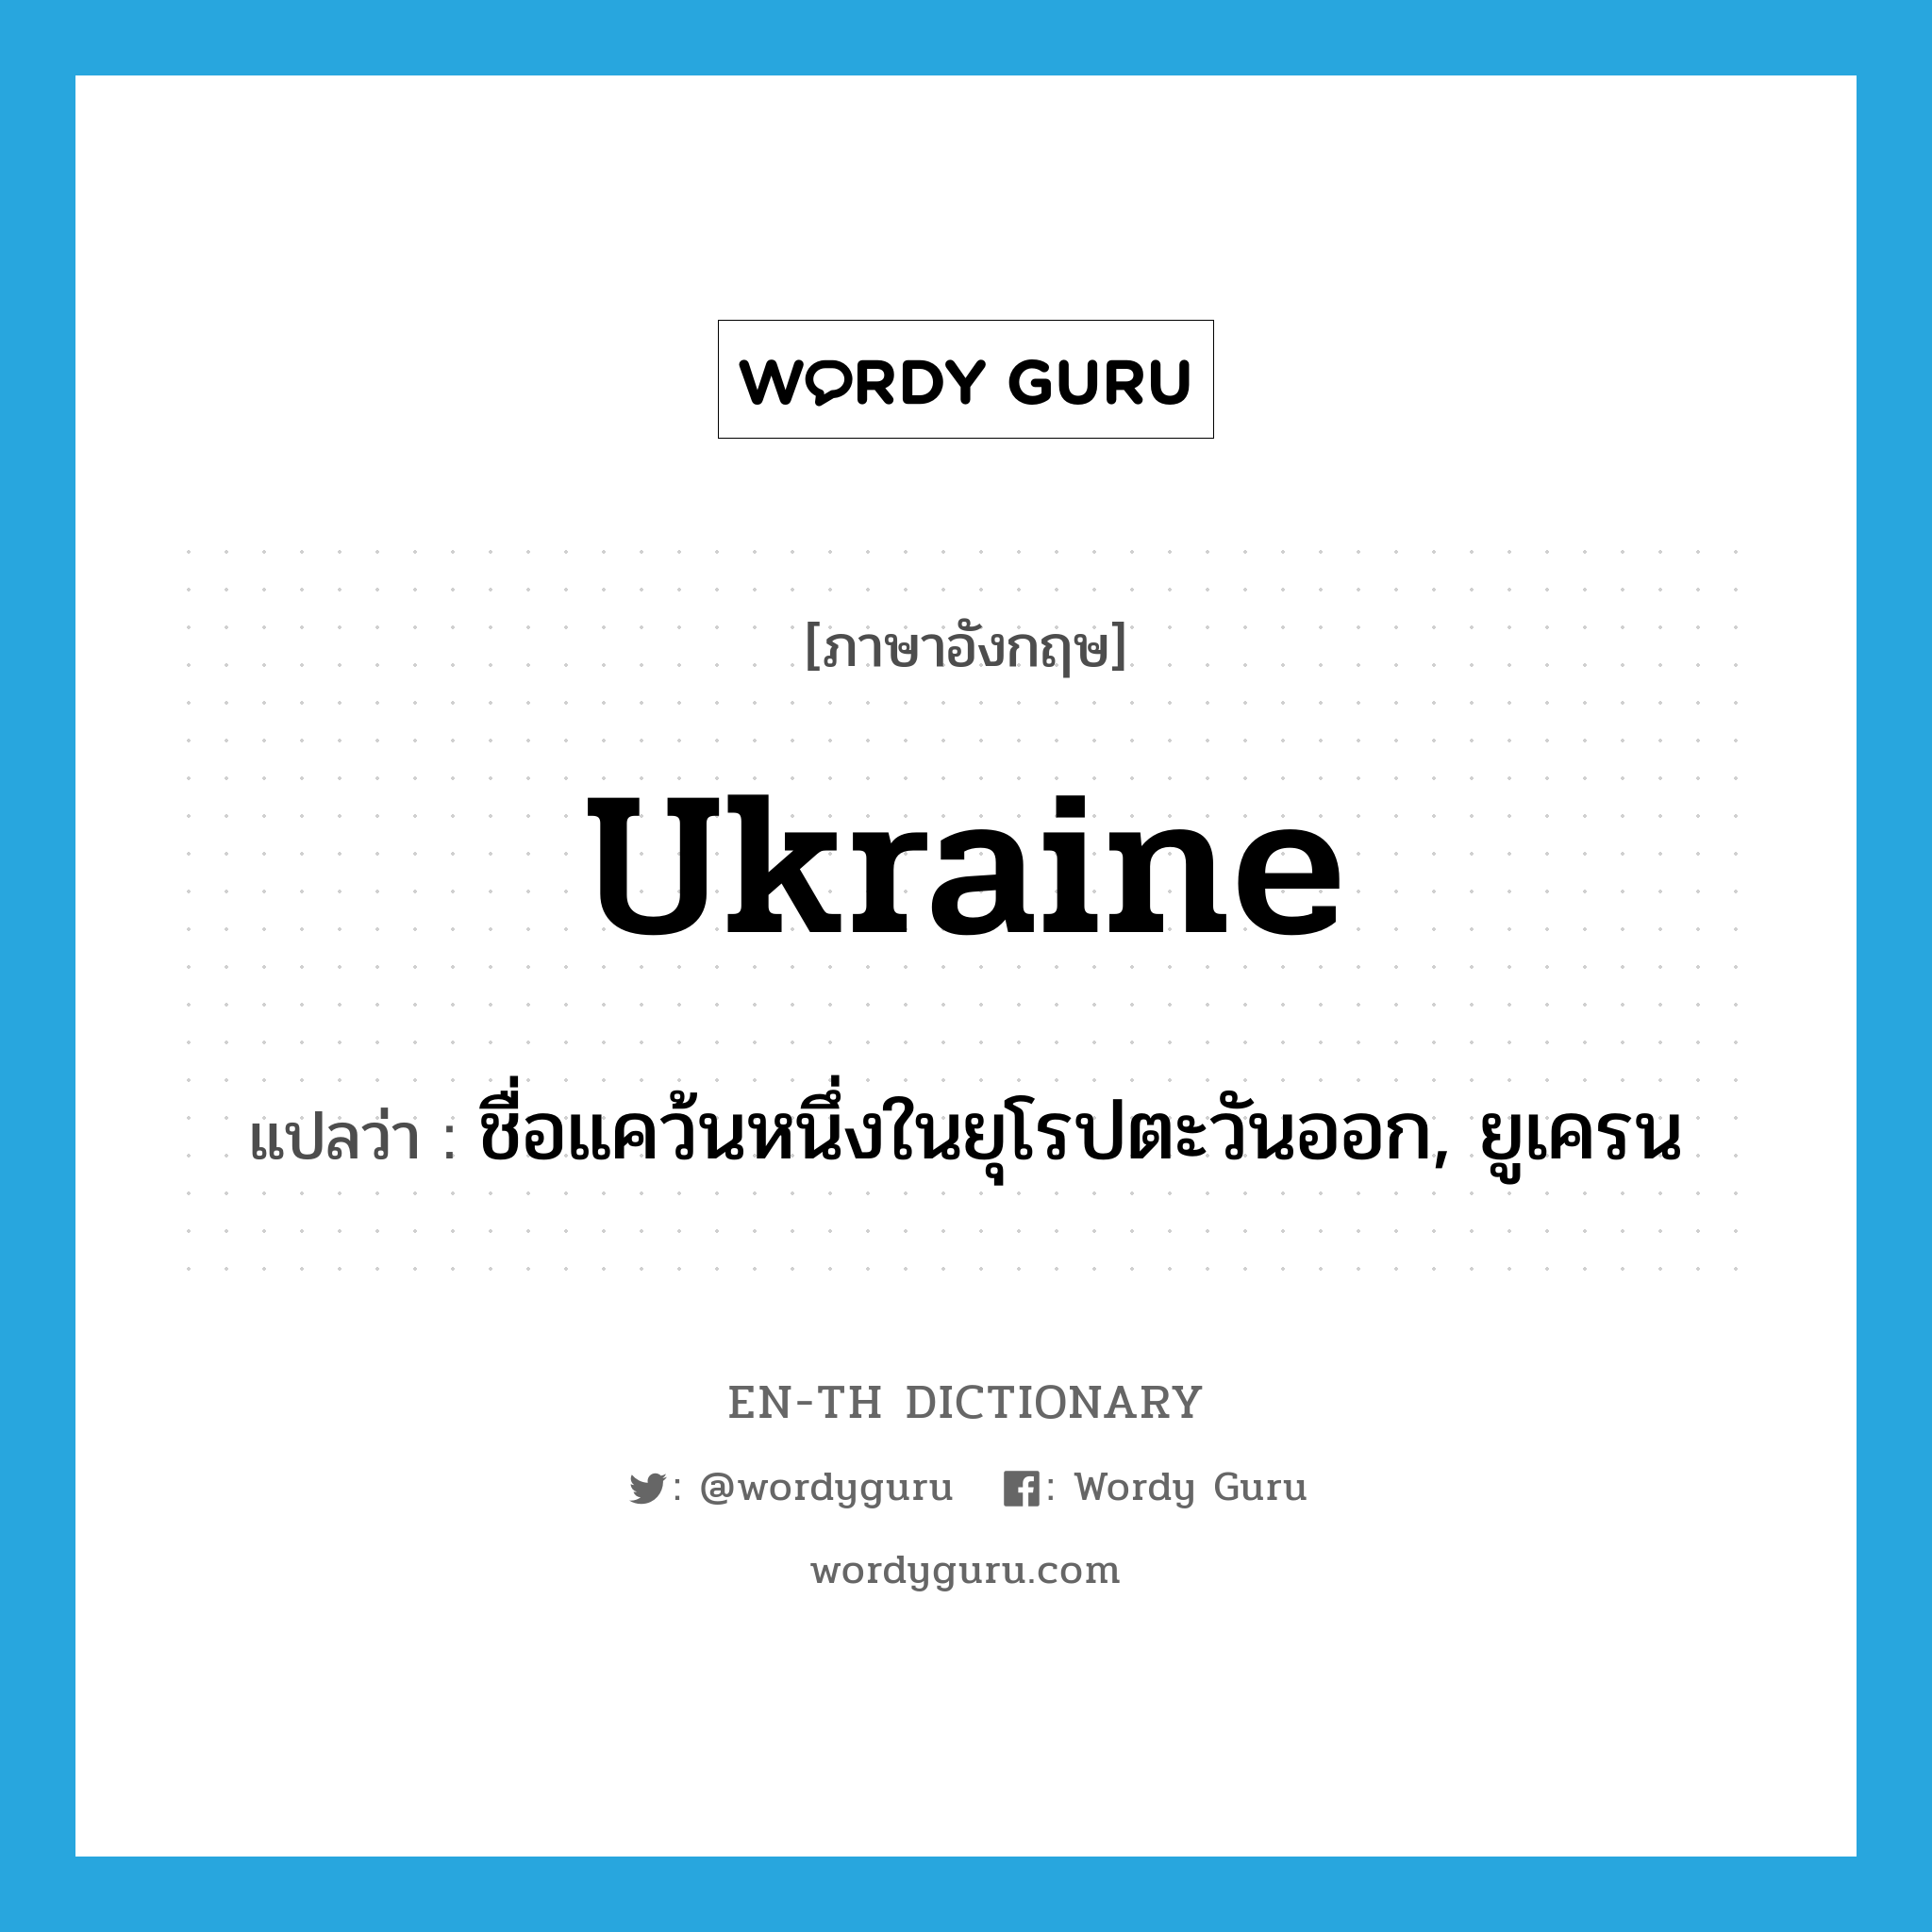 ชื่อแคว้นหนึ่งในยุโรปตะวันออก, ยูเครน ภาษาอังกฤษ?, คำศัพท์ภาษาอังกฤษ ชื่อแคว้นหนึ่งในยุโรปตะวันออก, ยูเครน แปลว่า Ukraine ประเภท N หมวด N